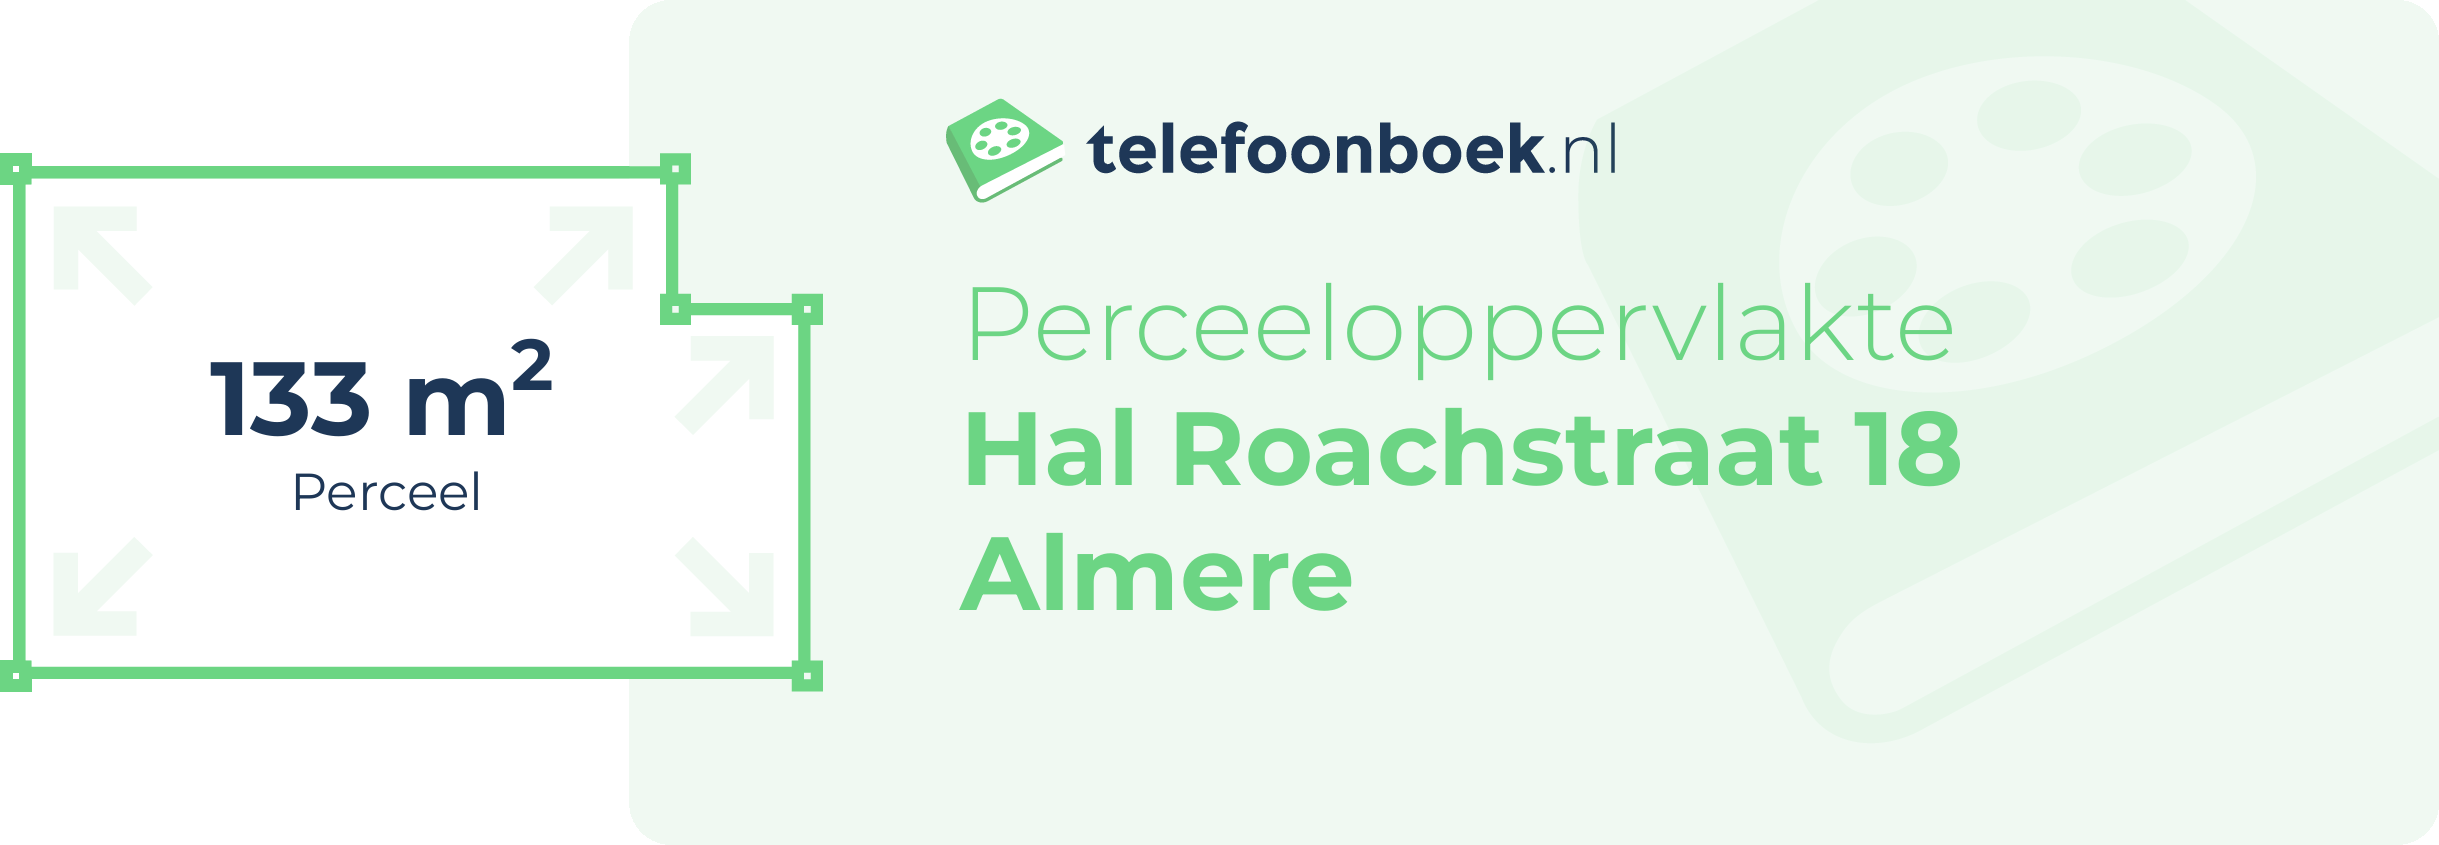 Perceeloppervlakte Hal Roachstraat 18 Almere